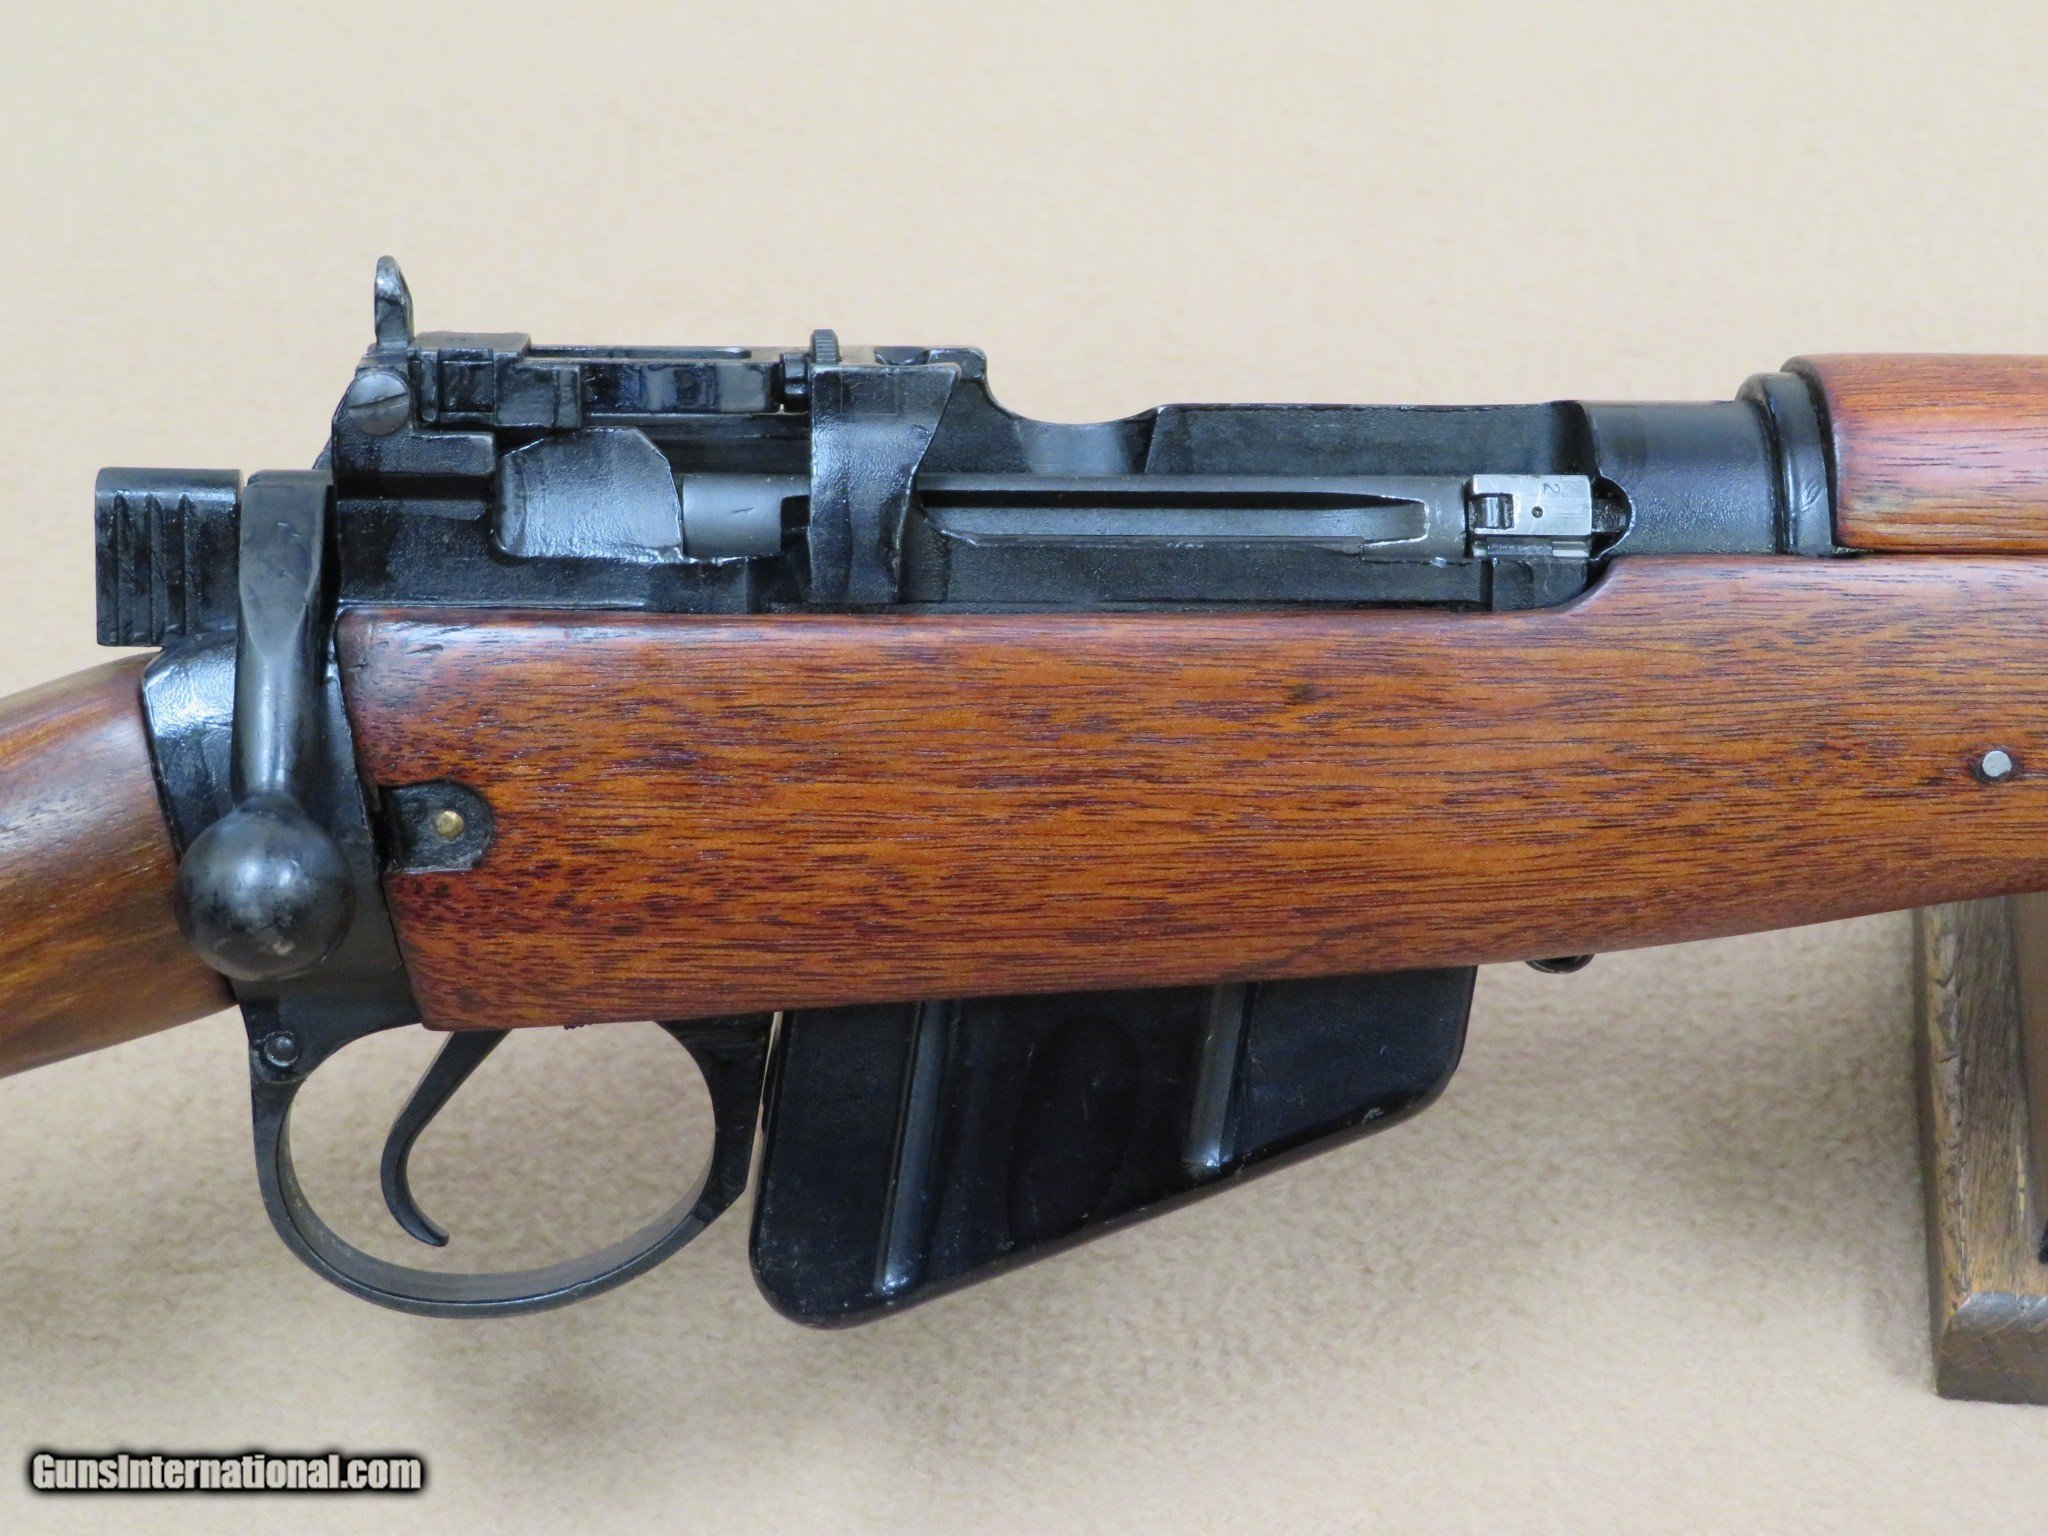 1941 No.4 Mk1 Long Branch Rifle